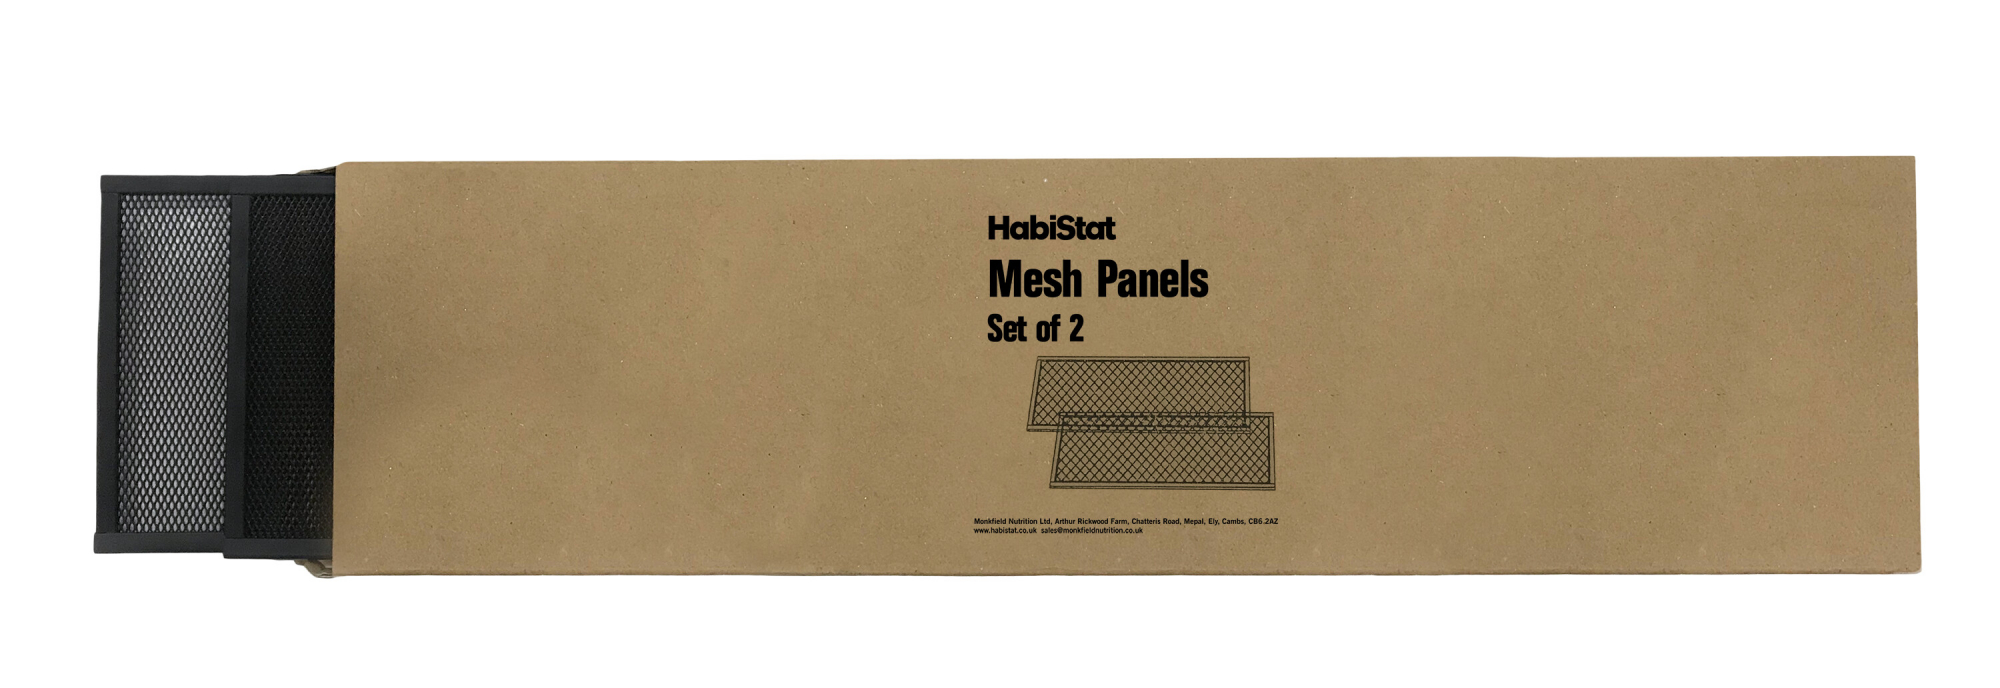 Kit de grilles d'aération pour terrariums HabiStat 60cm de haut